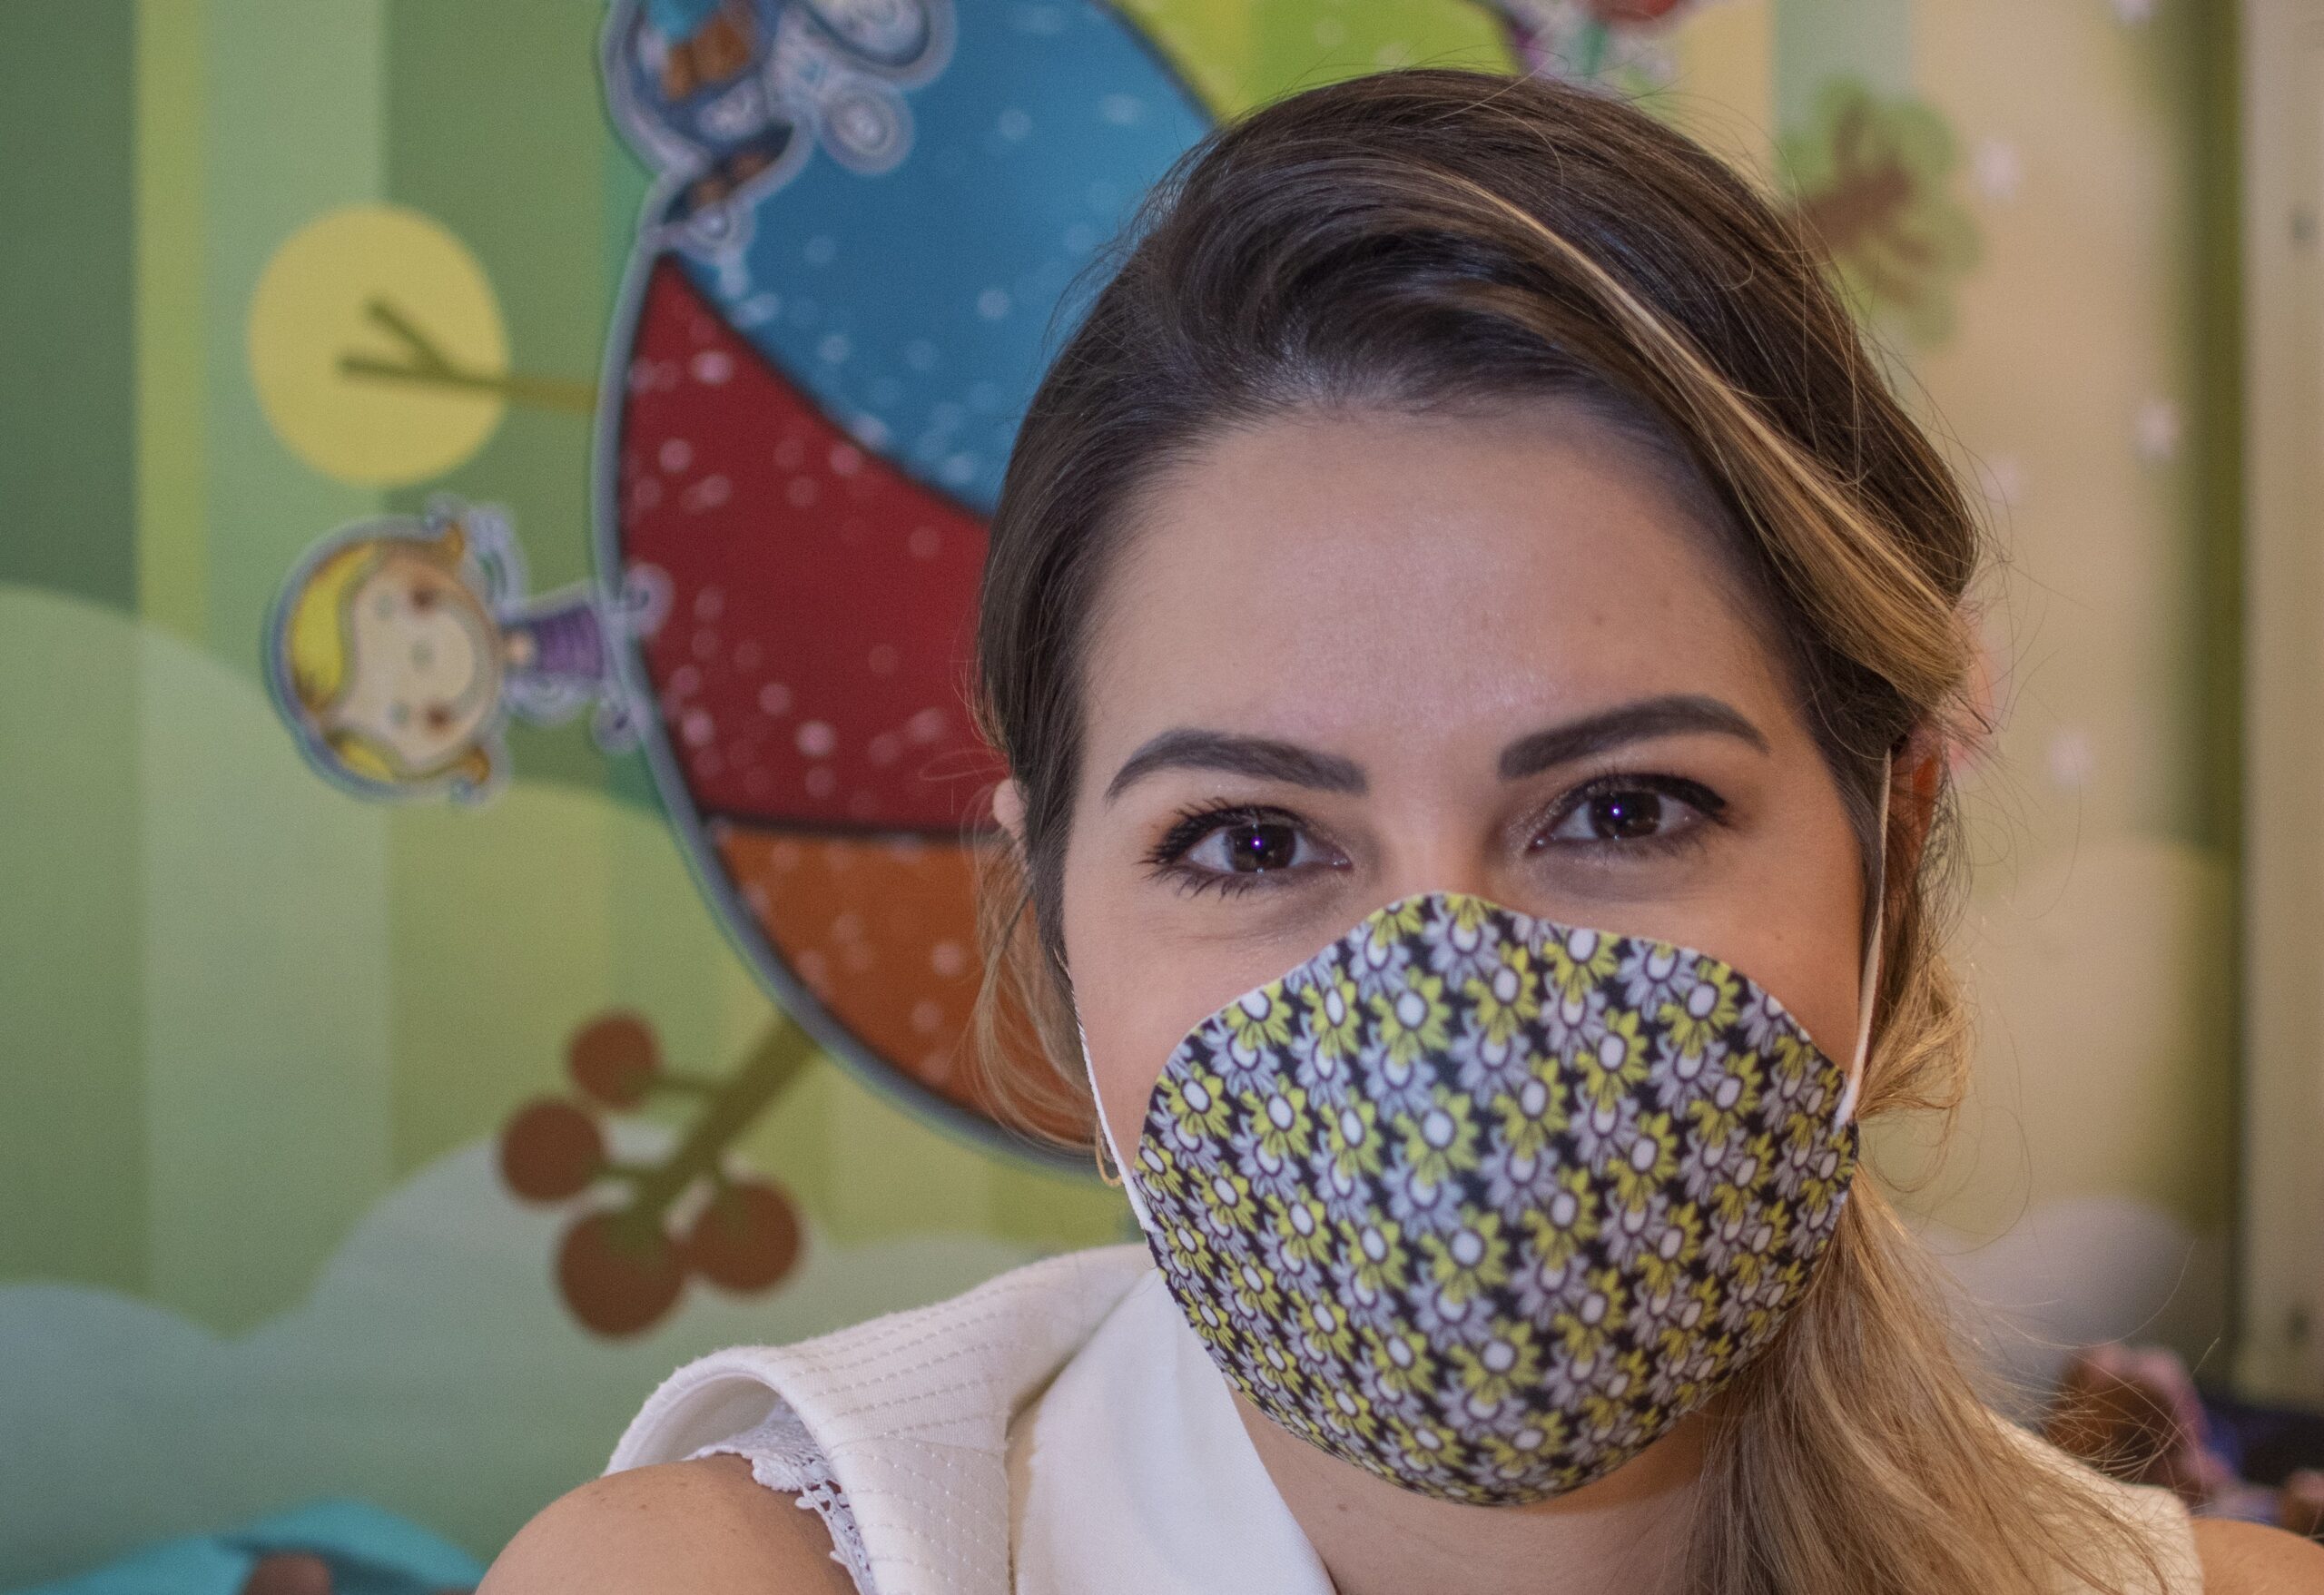 Em prol da solidariedade, marcas e estilistas cearenses produzem máscaras para doação